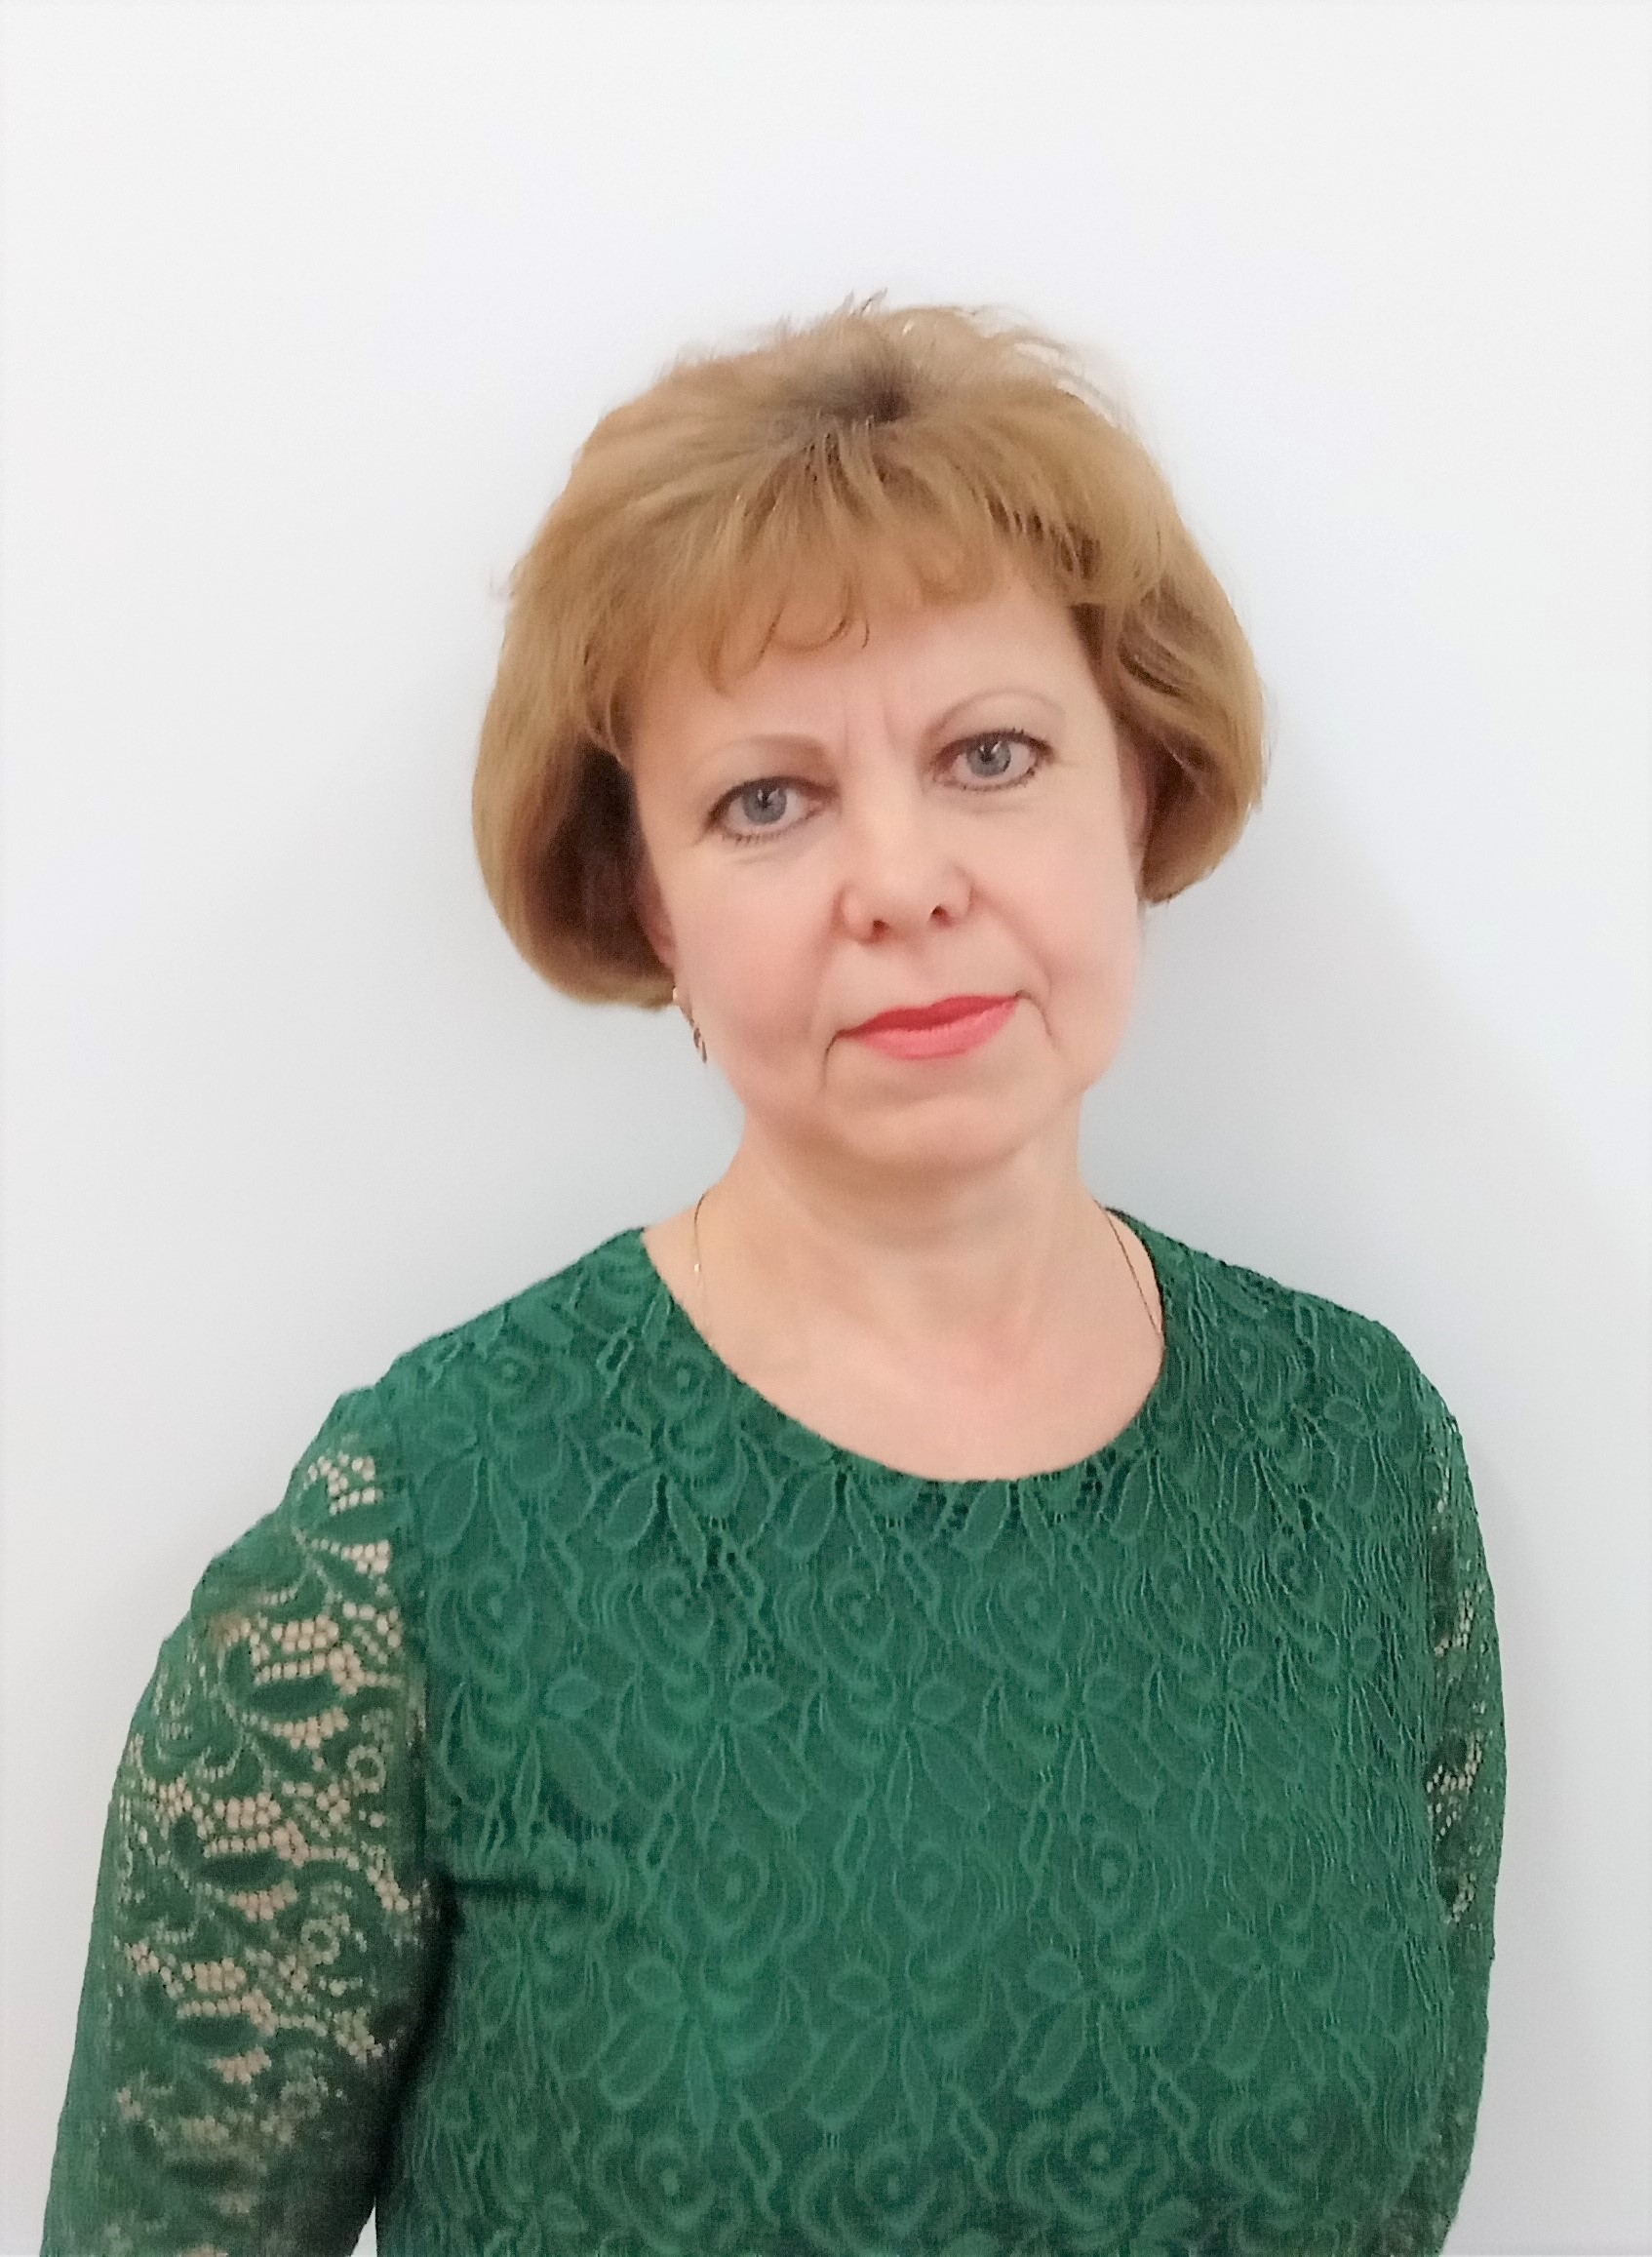 Шестерякова Светлана Николаевна.